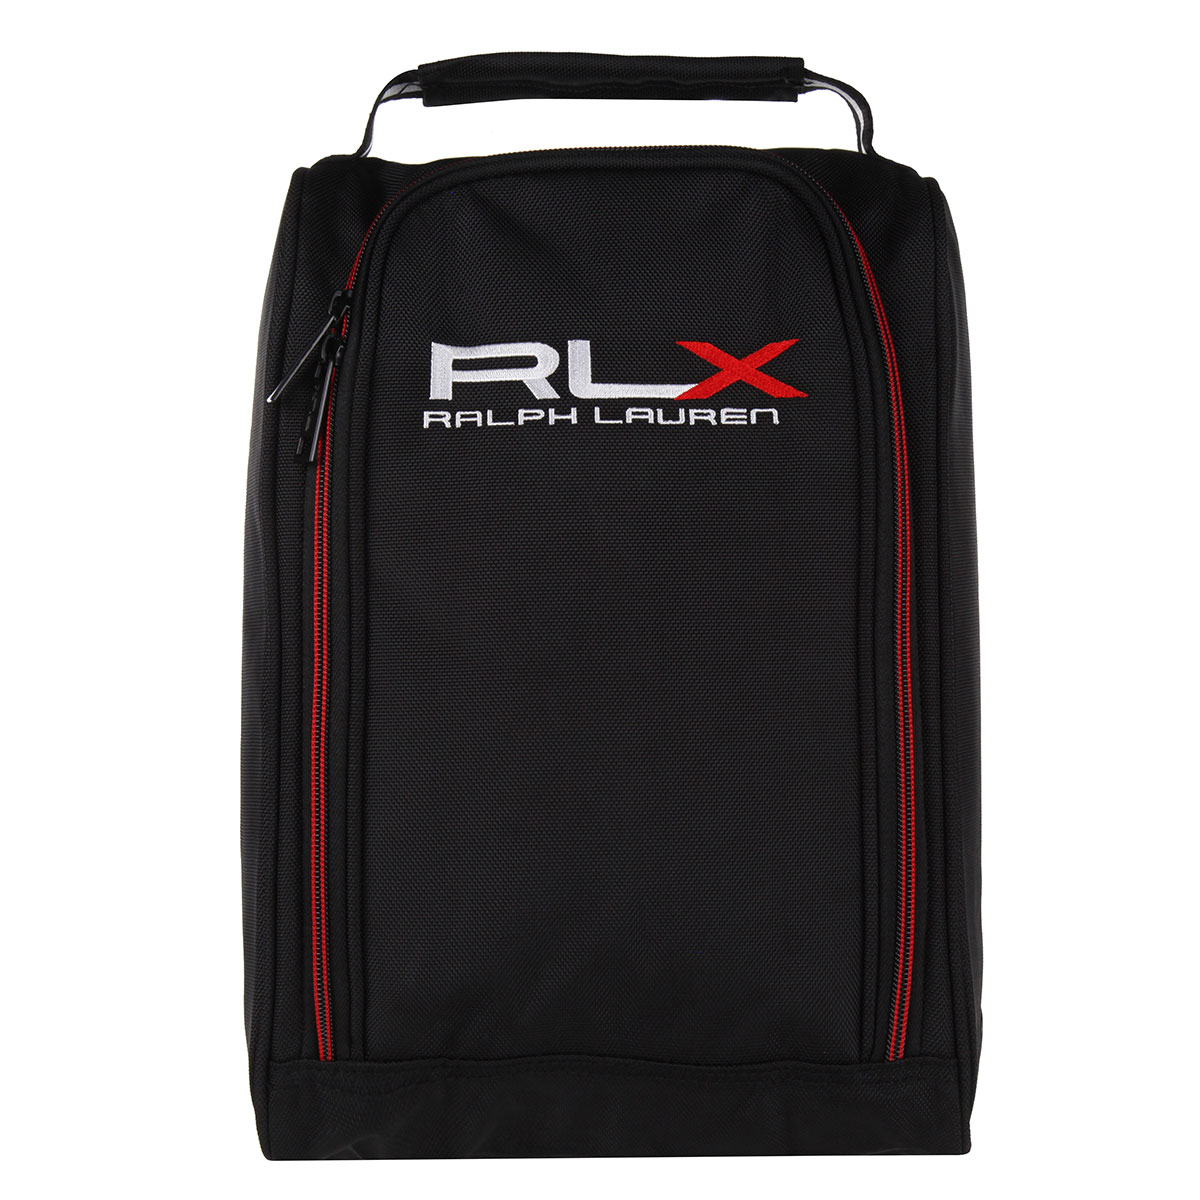 Ralph Lauren RLX Golf Shoe Bag from american golf